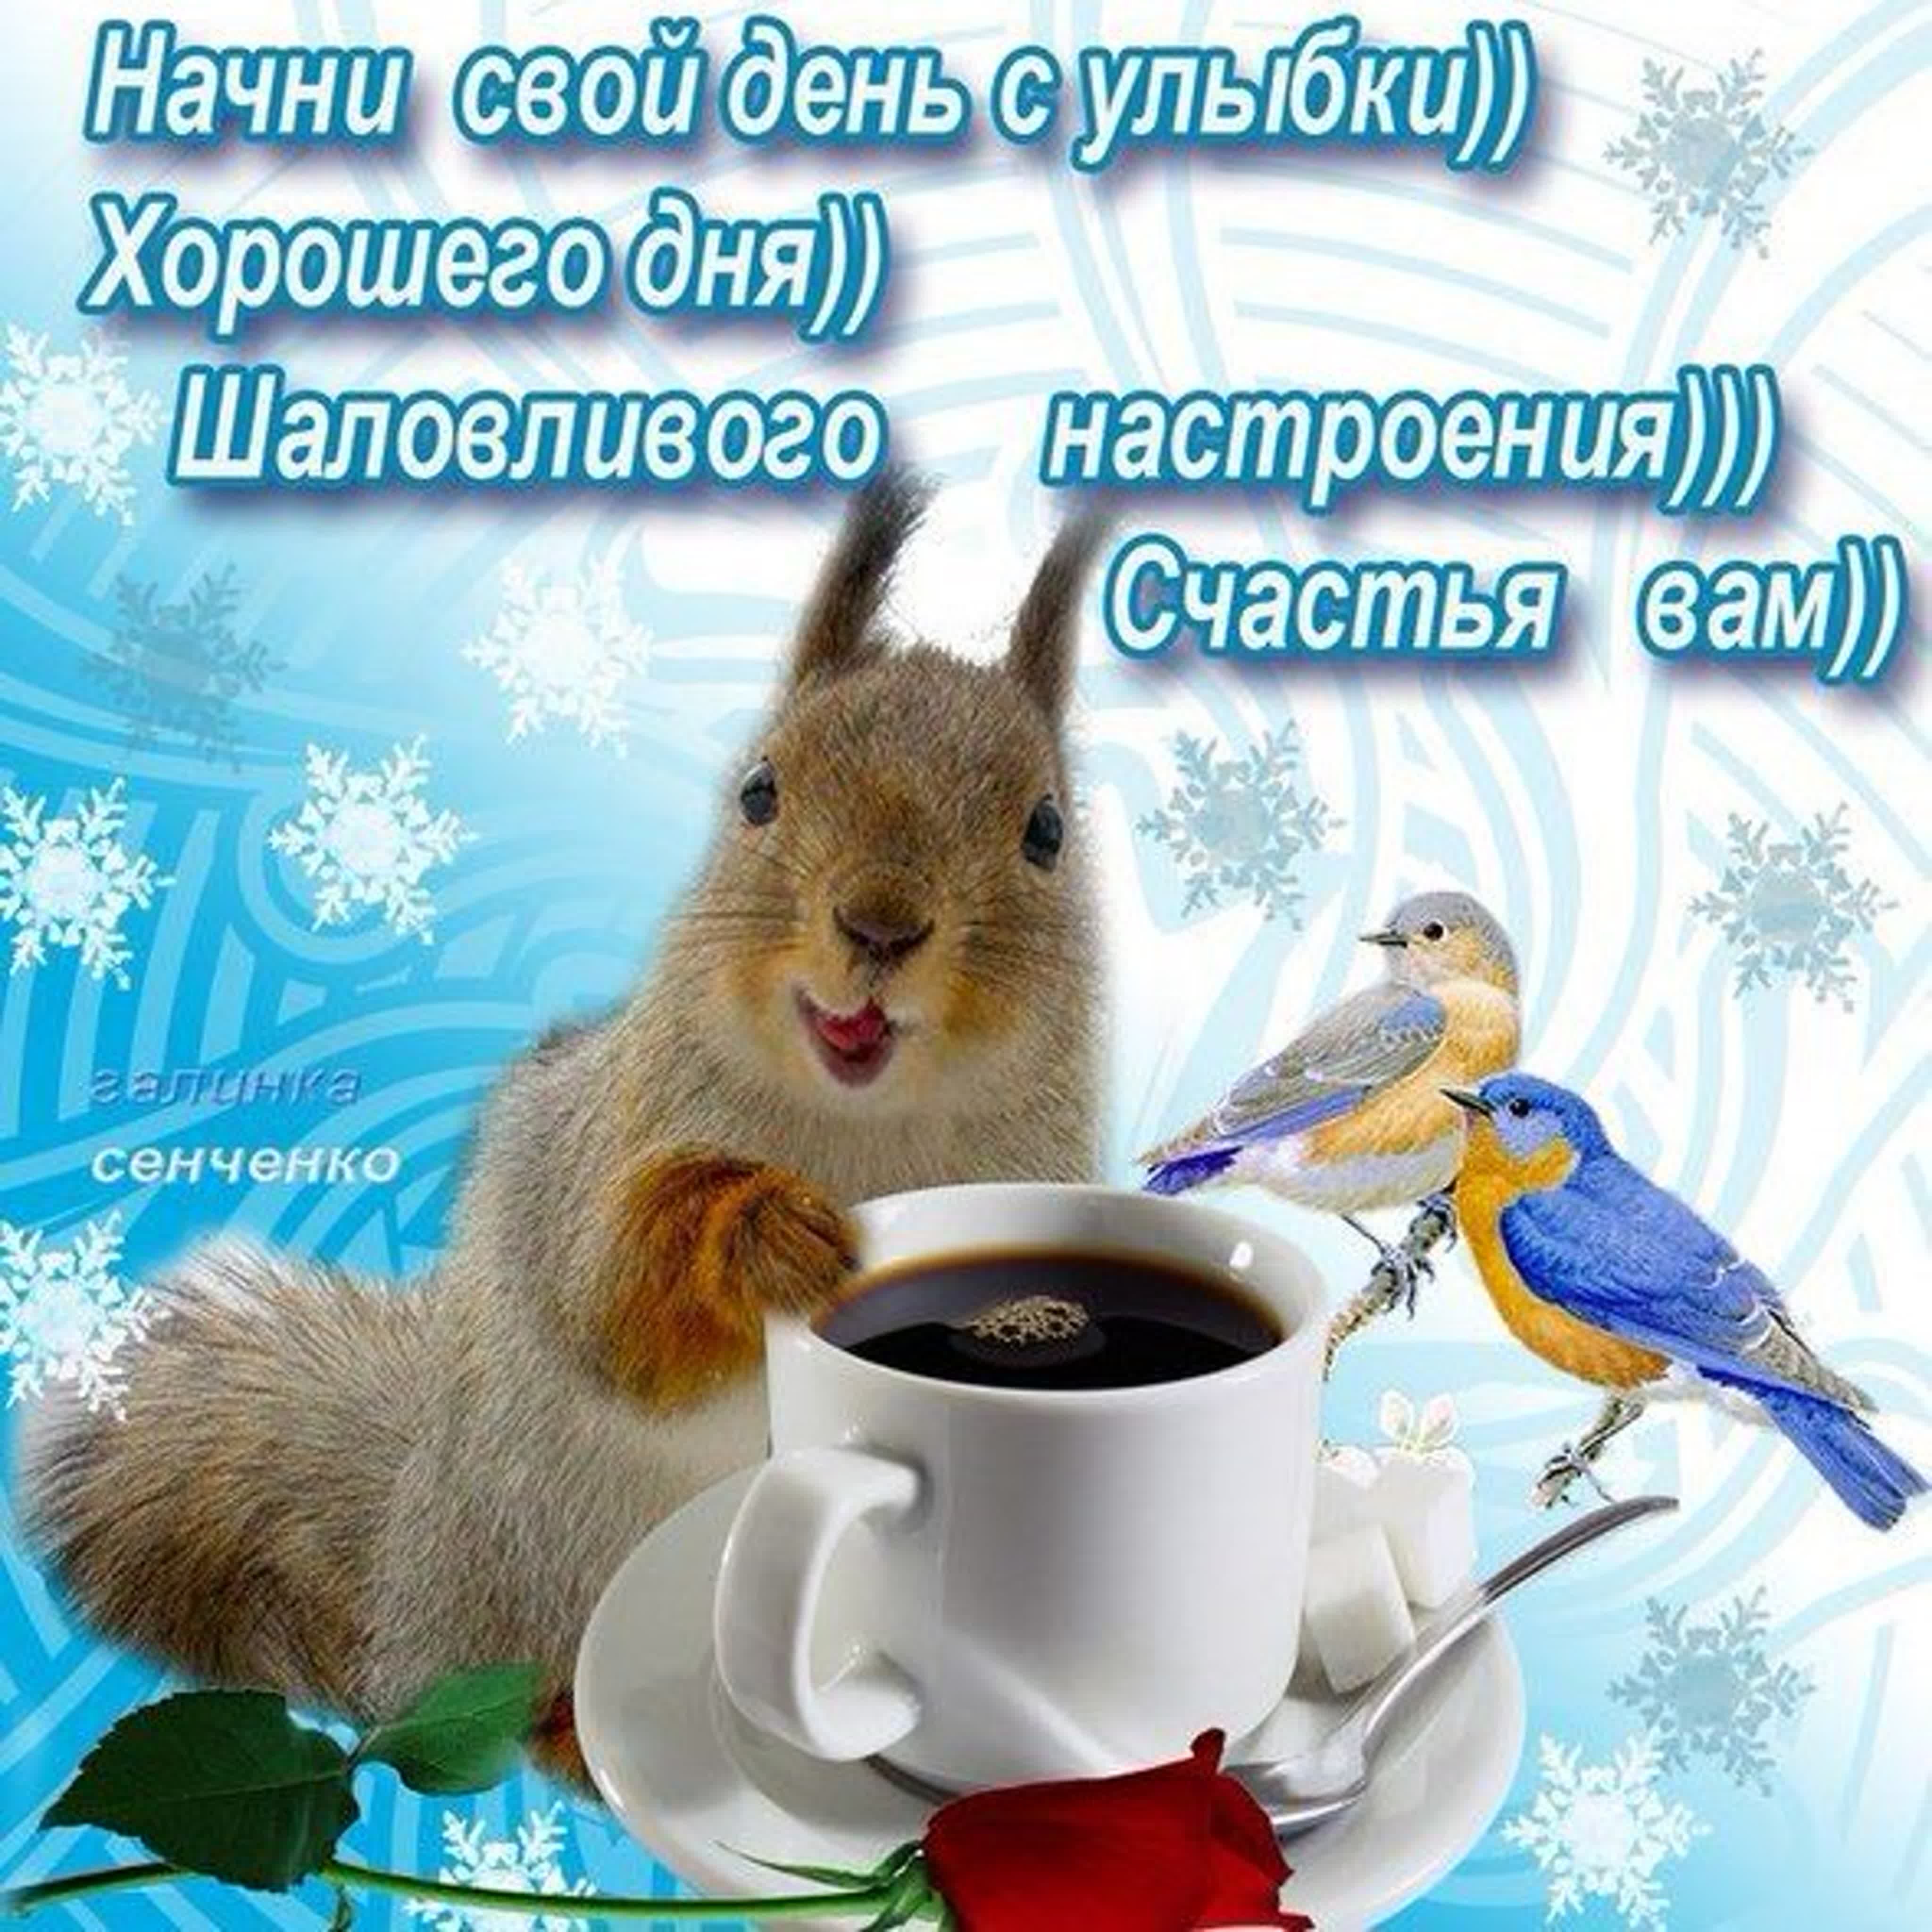 Хорошего дня друзьям зимние. Зимние поздравления с добрым утром. Зимние открытки поздравления с добрым утром. Пожелания доброго зимнего утра. Доброго зимнего утра и хорошего дня.